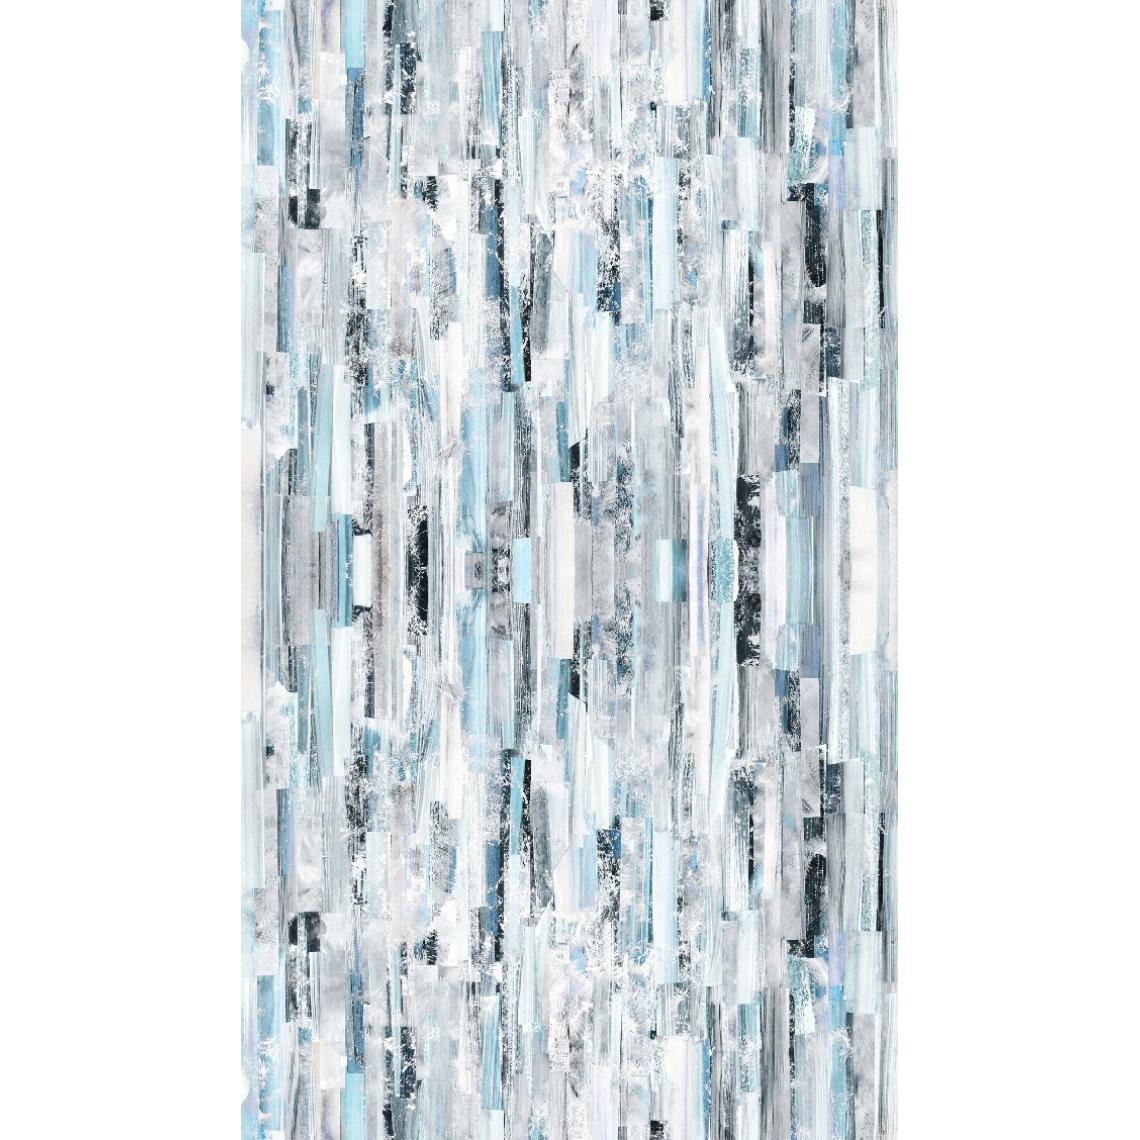 Homemania - HOMEMANIA Tapis Imprimé Blue Wood 1 - Géométrique - Décoration de Maison - Antidérapant - Pour Salon, séjour, chambre à coucher - Multicolore en Polyester, Coton, 100 x 150 cm - Tapis